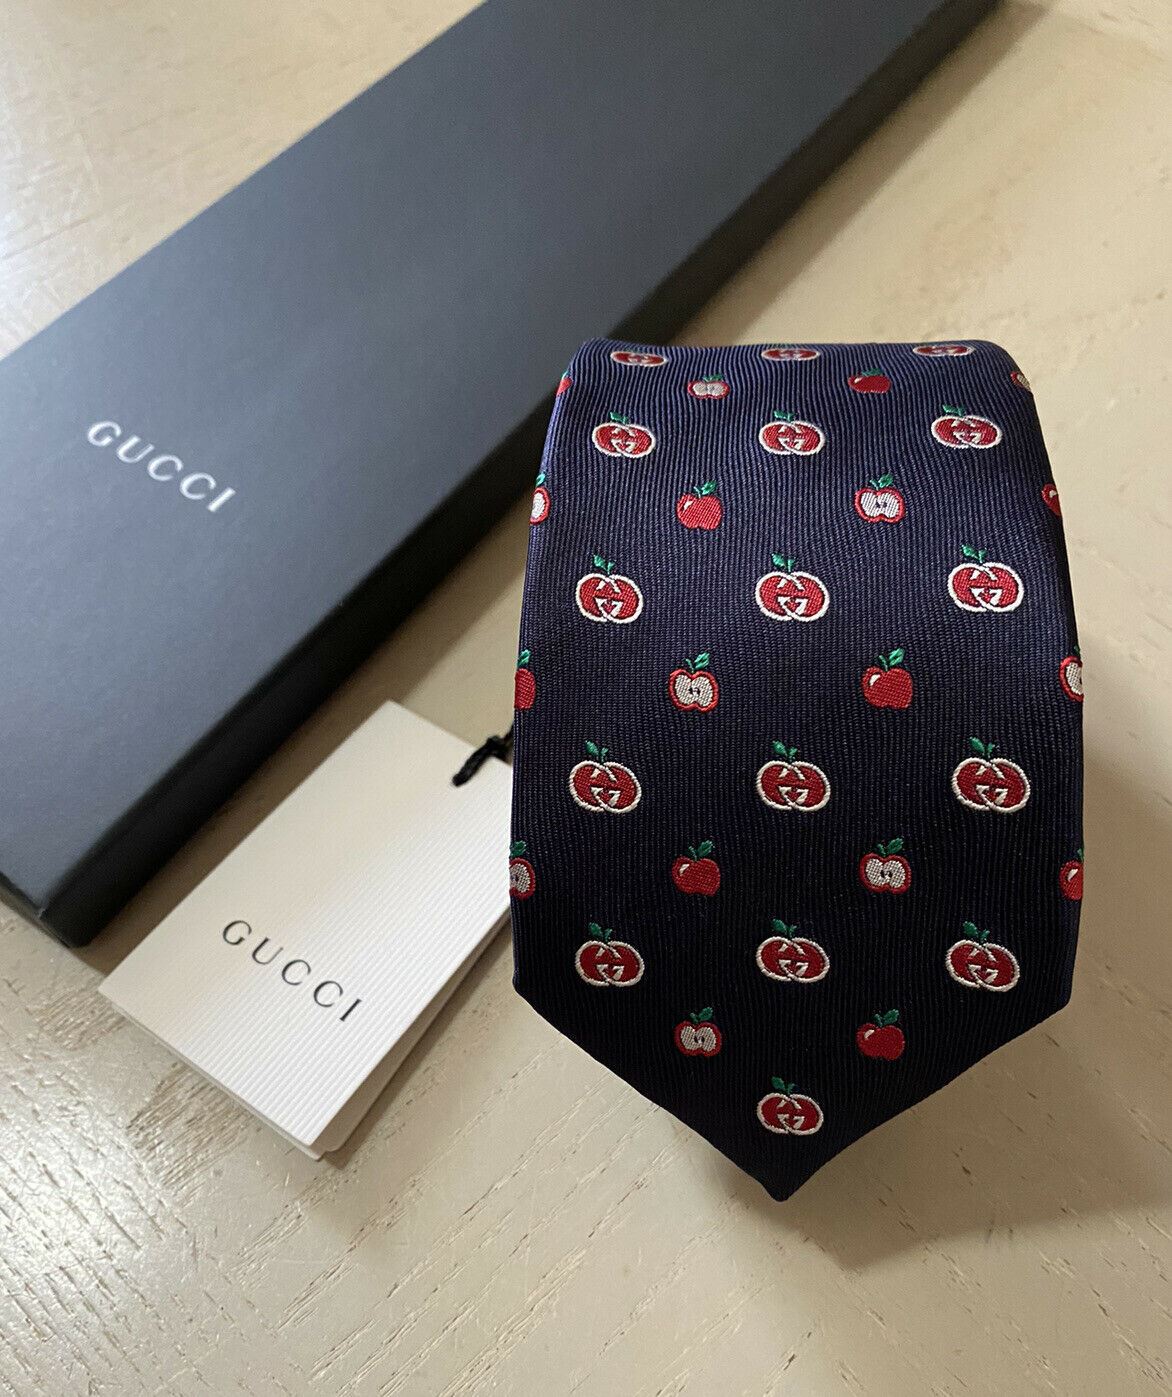 Новый мужской галстук с монограммой Gucci темно-синий/красный от Gucci, сделанный в Италии